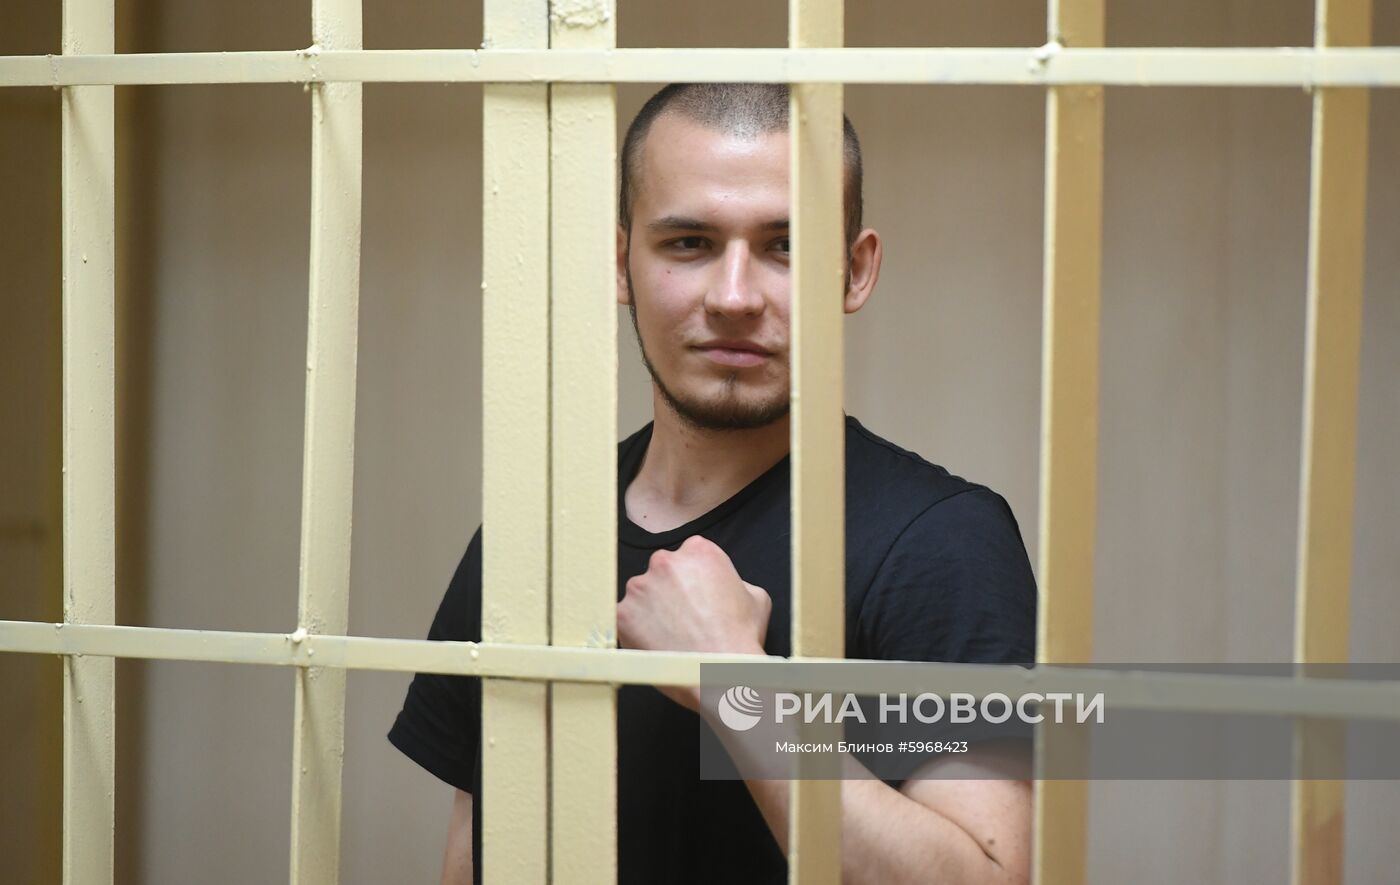 Избрание меры пресечения обвиняемым в беспорядках в Москве